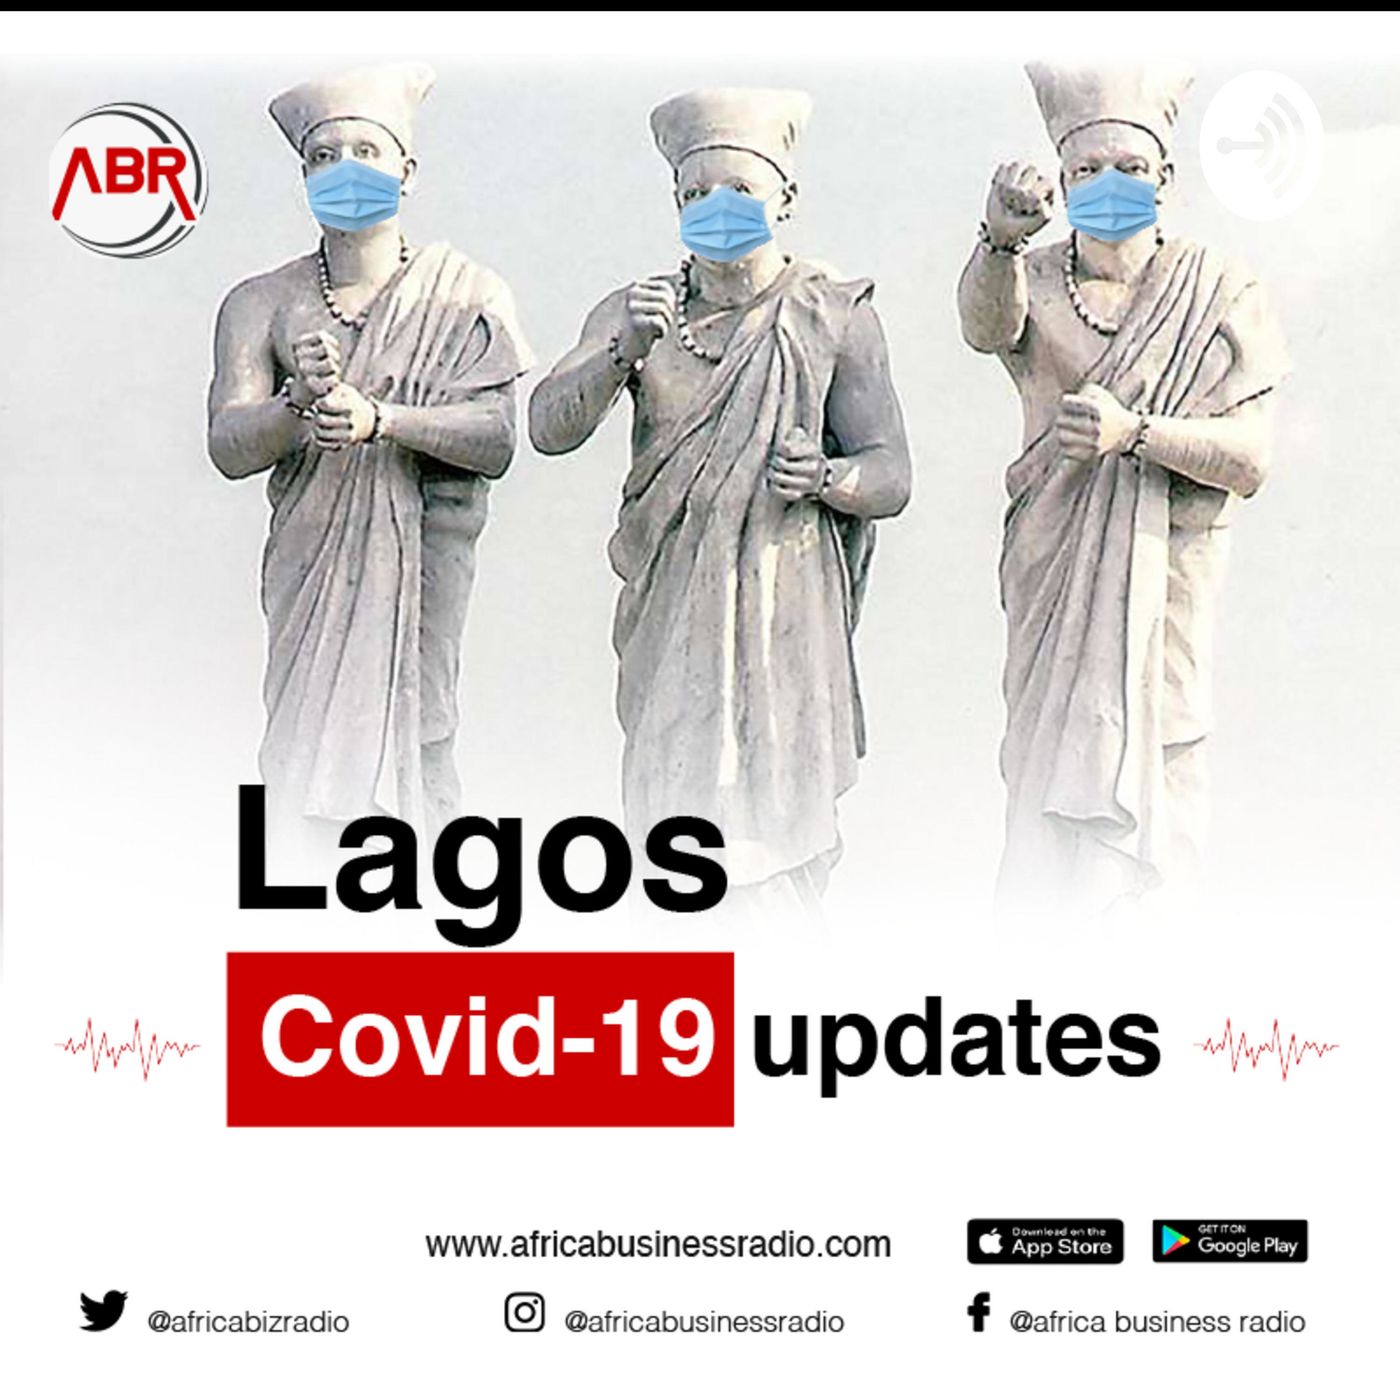 Lagos Covid-19 Updates podcast